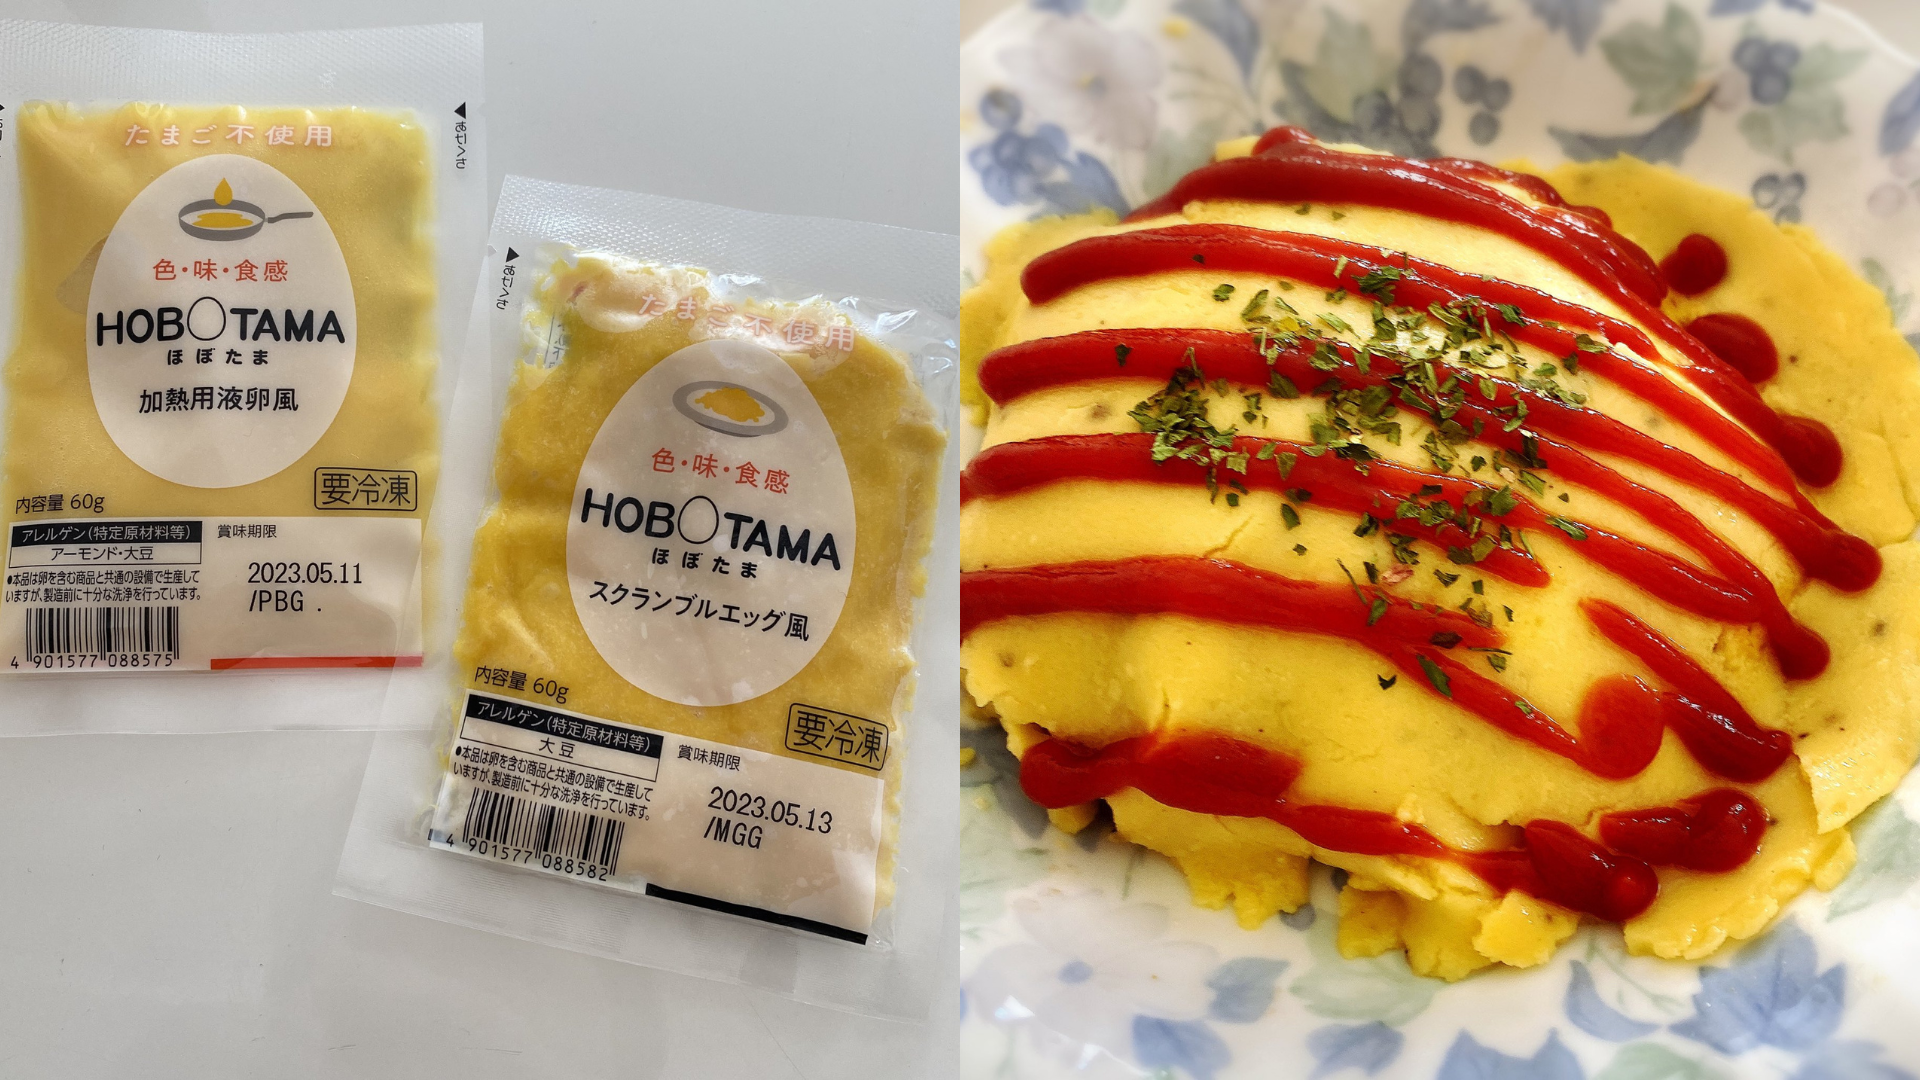 日本用植物原料製成「HOBOTAMA」作為雞蛋替代品